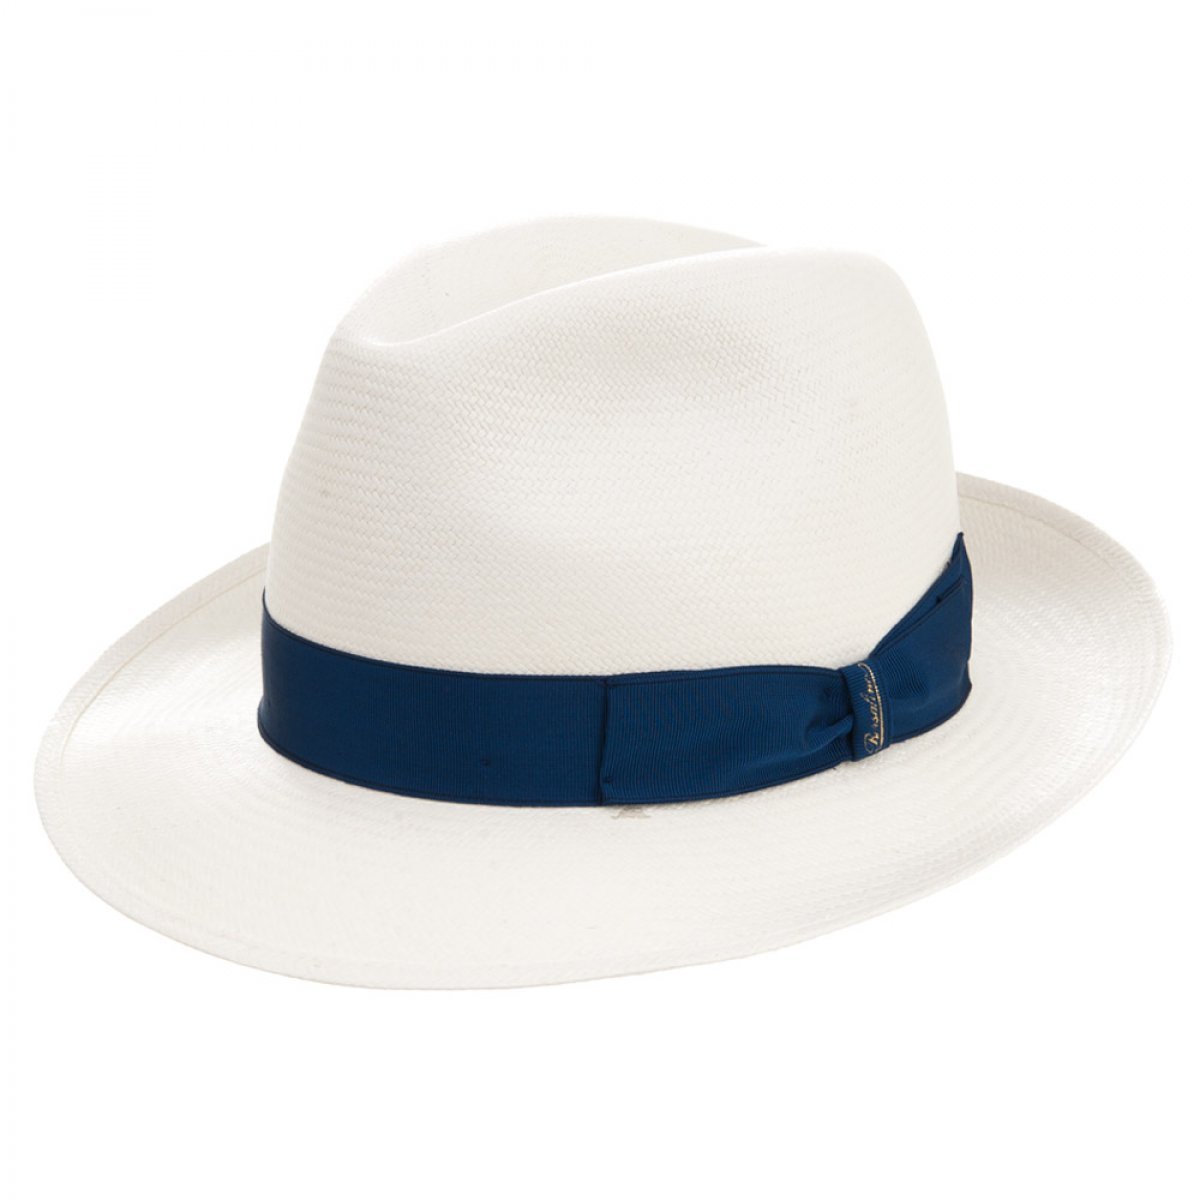 Cappello Panama firmato Borsalino con fascia elegante